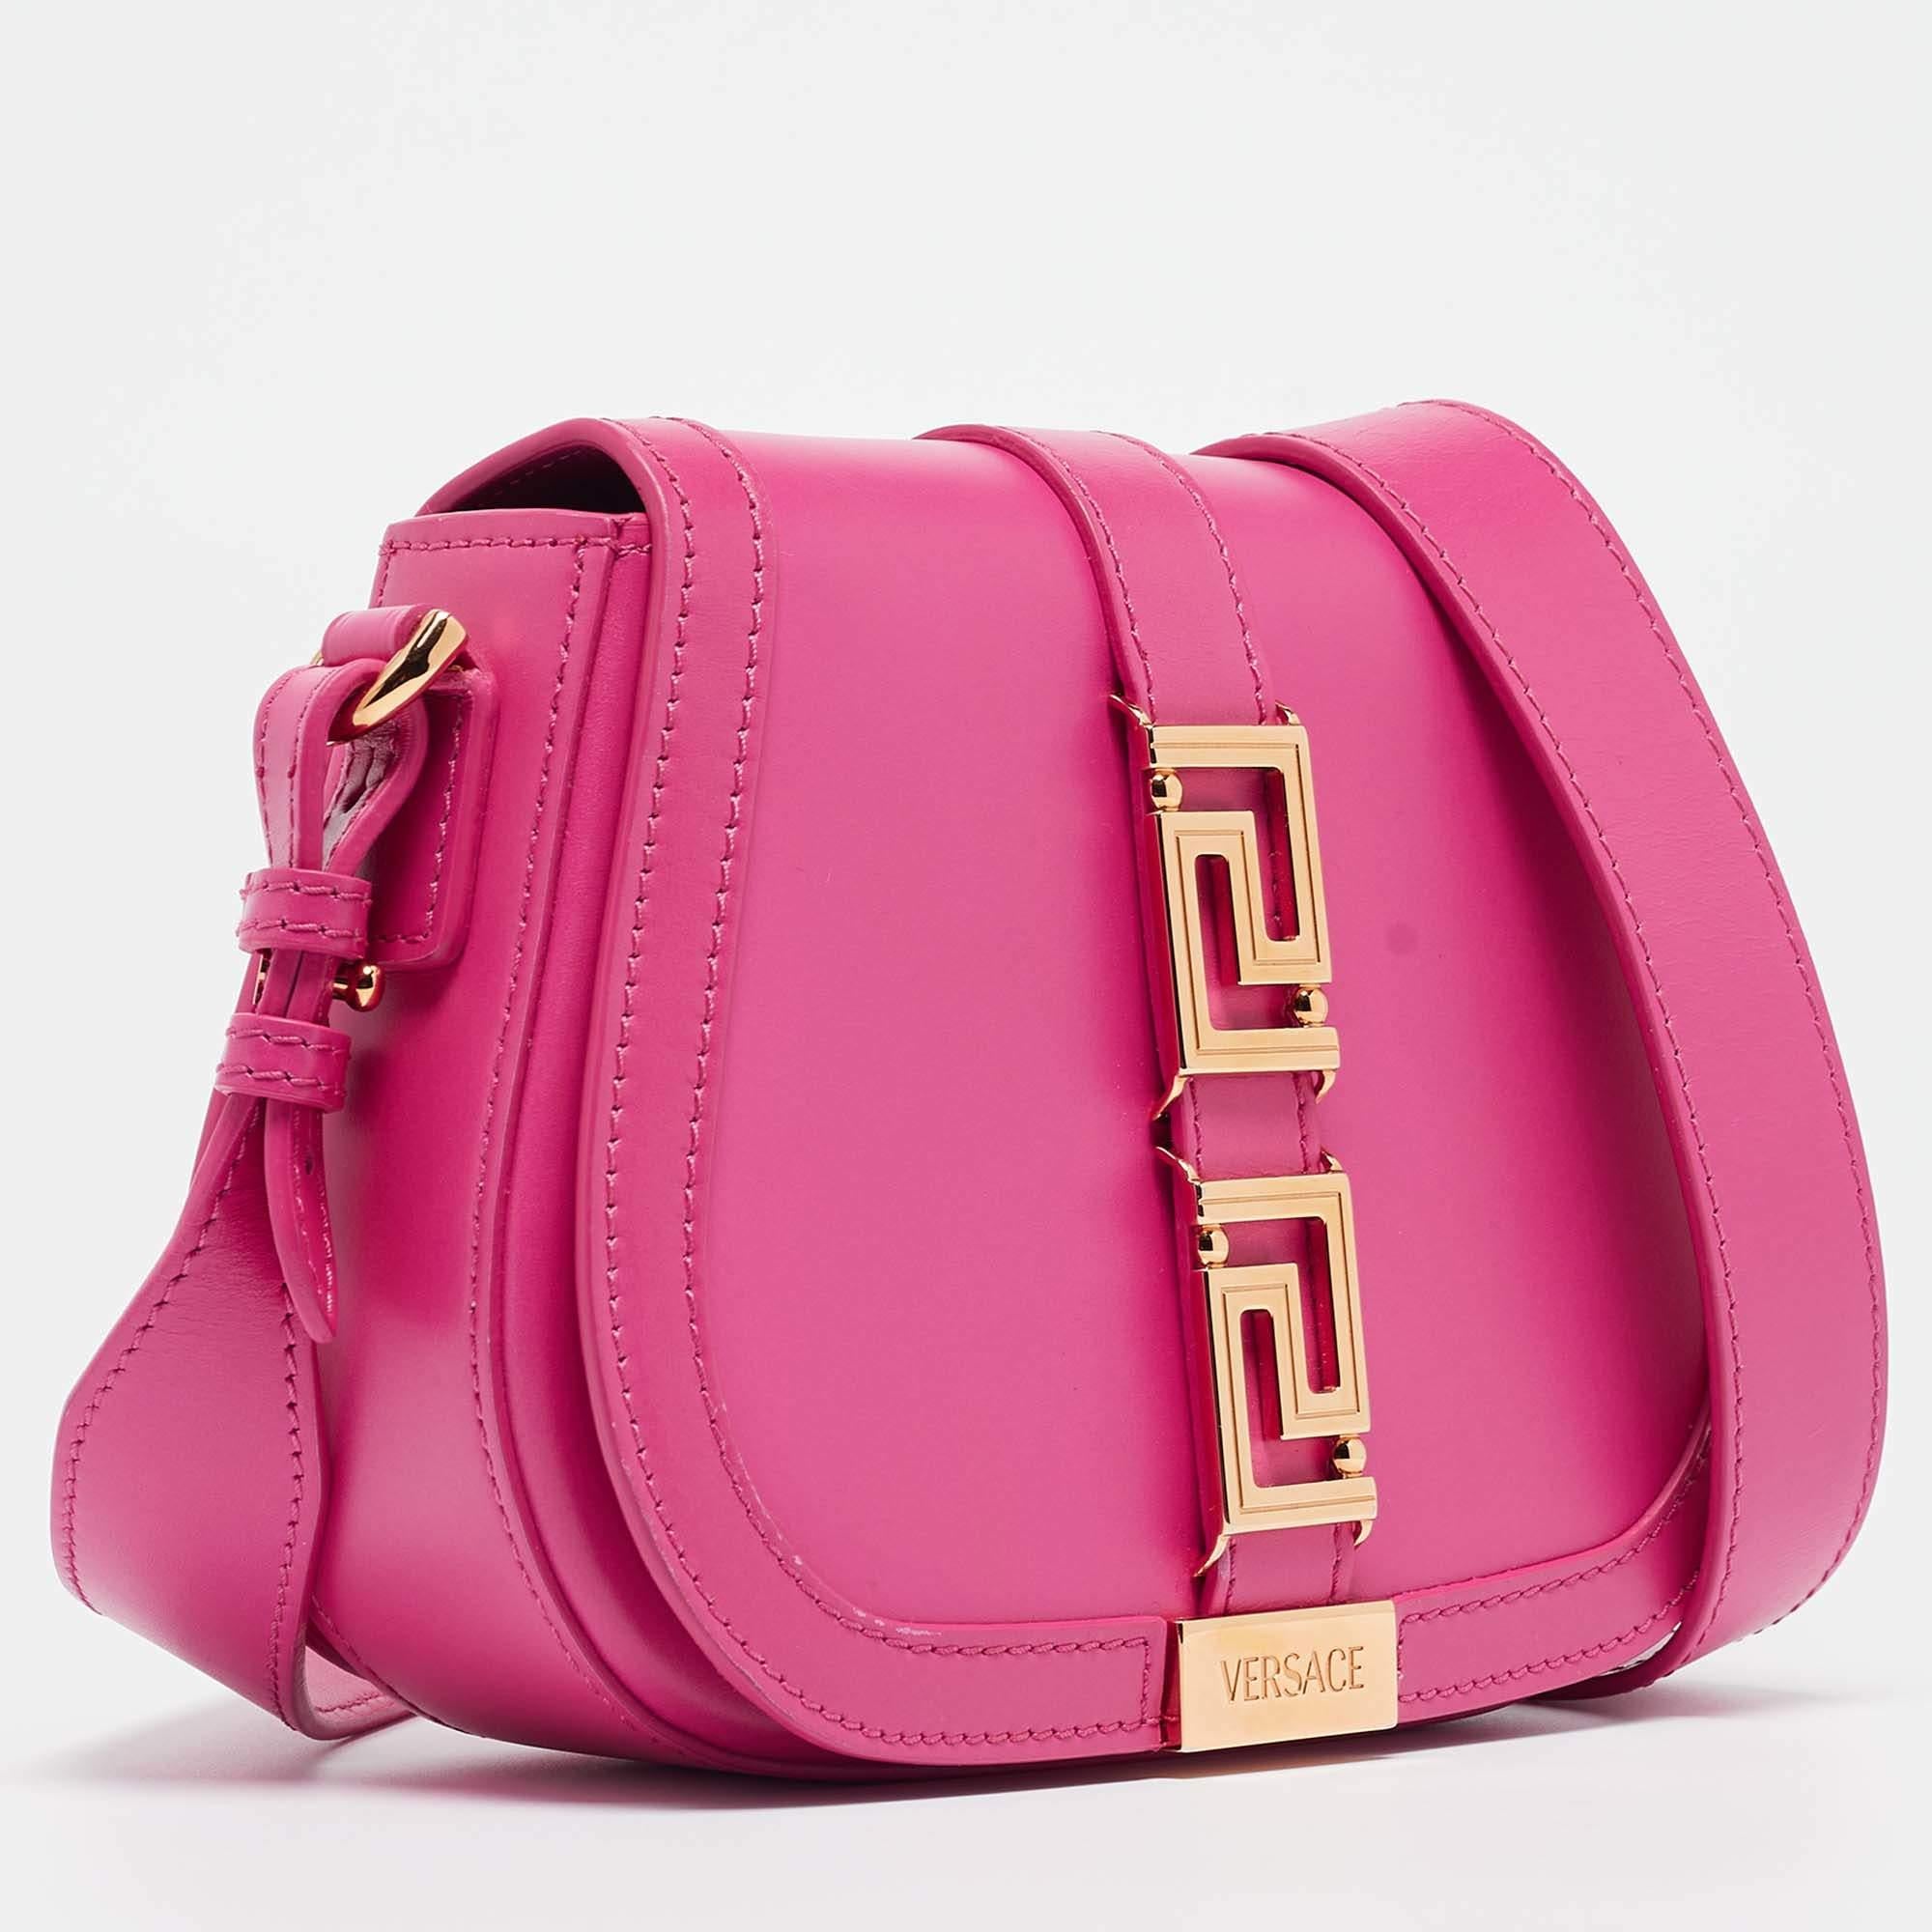 Versace Pink Leather Greca Shoulder Bag 2